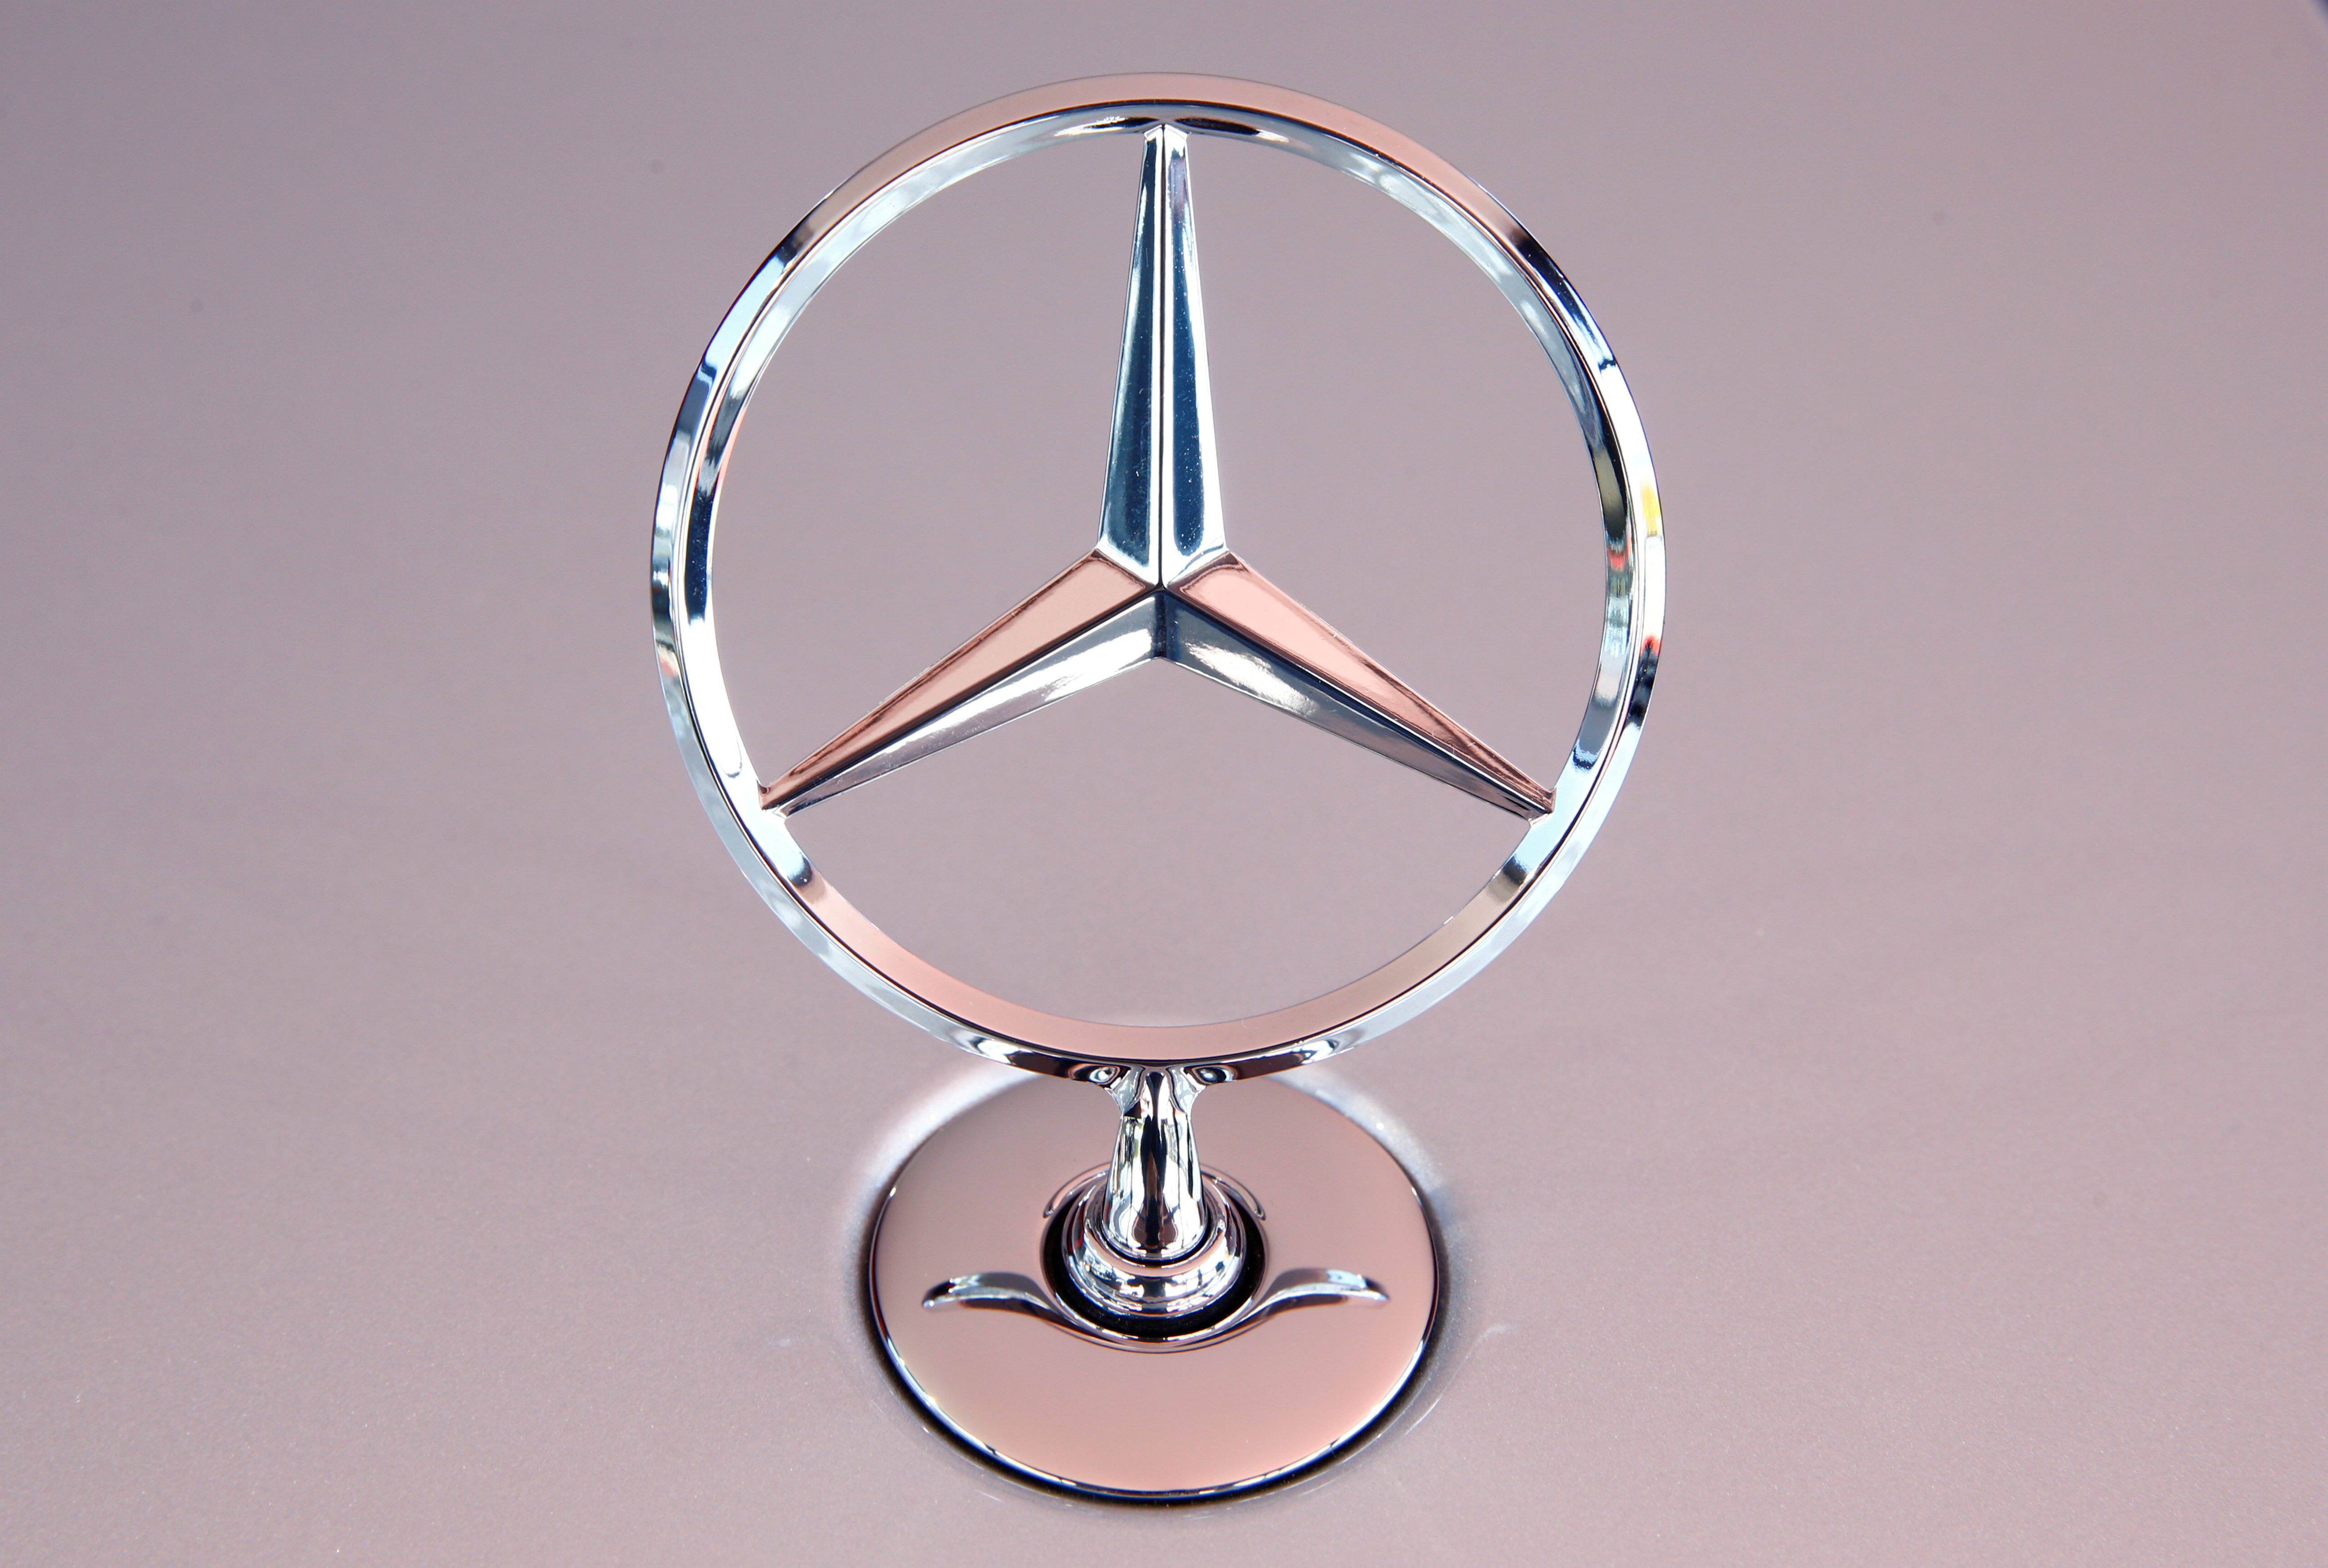 The Mercedes Benz star is seen on a new Mercedes-Benz S-Class limousine near Immendingen